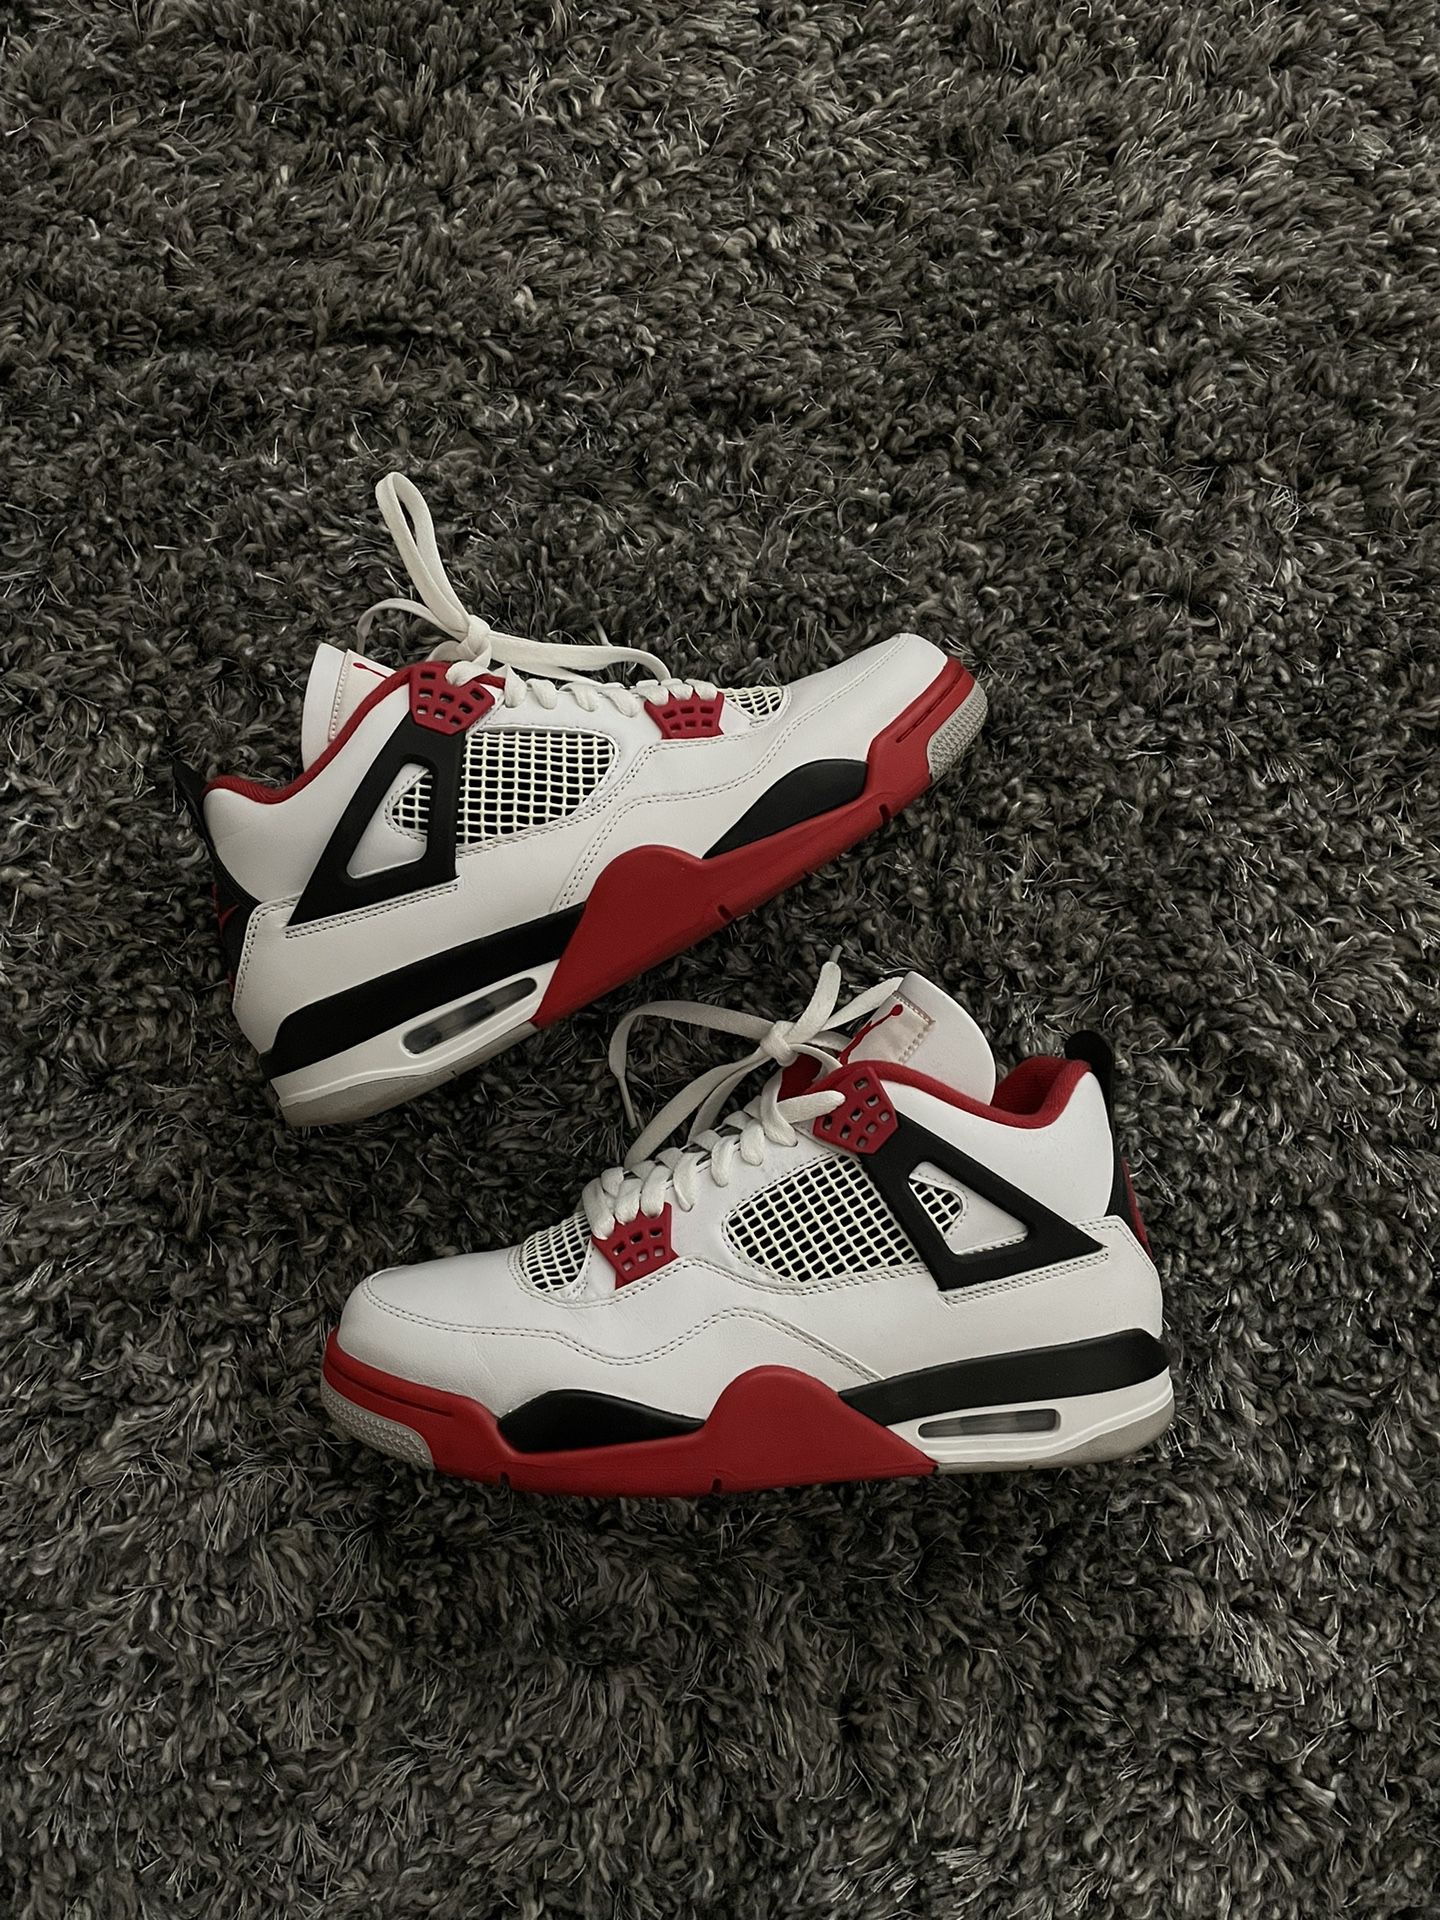 Air Jordan Retro OG “Fire Red” 2020